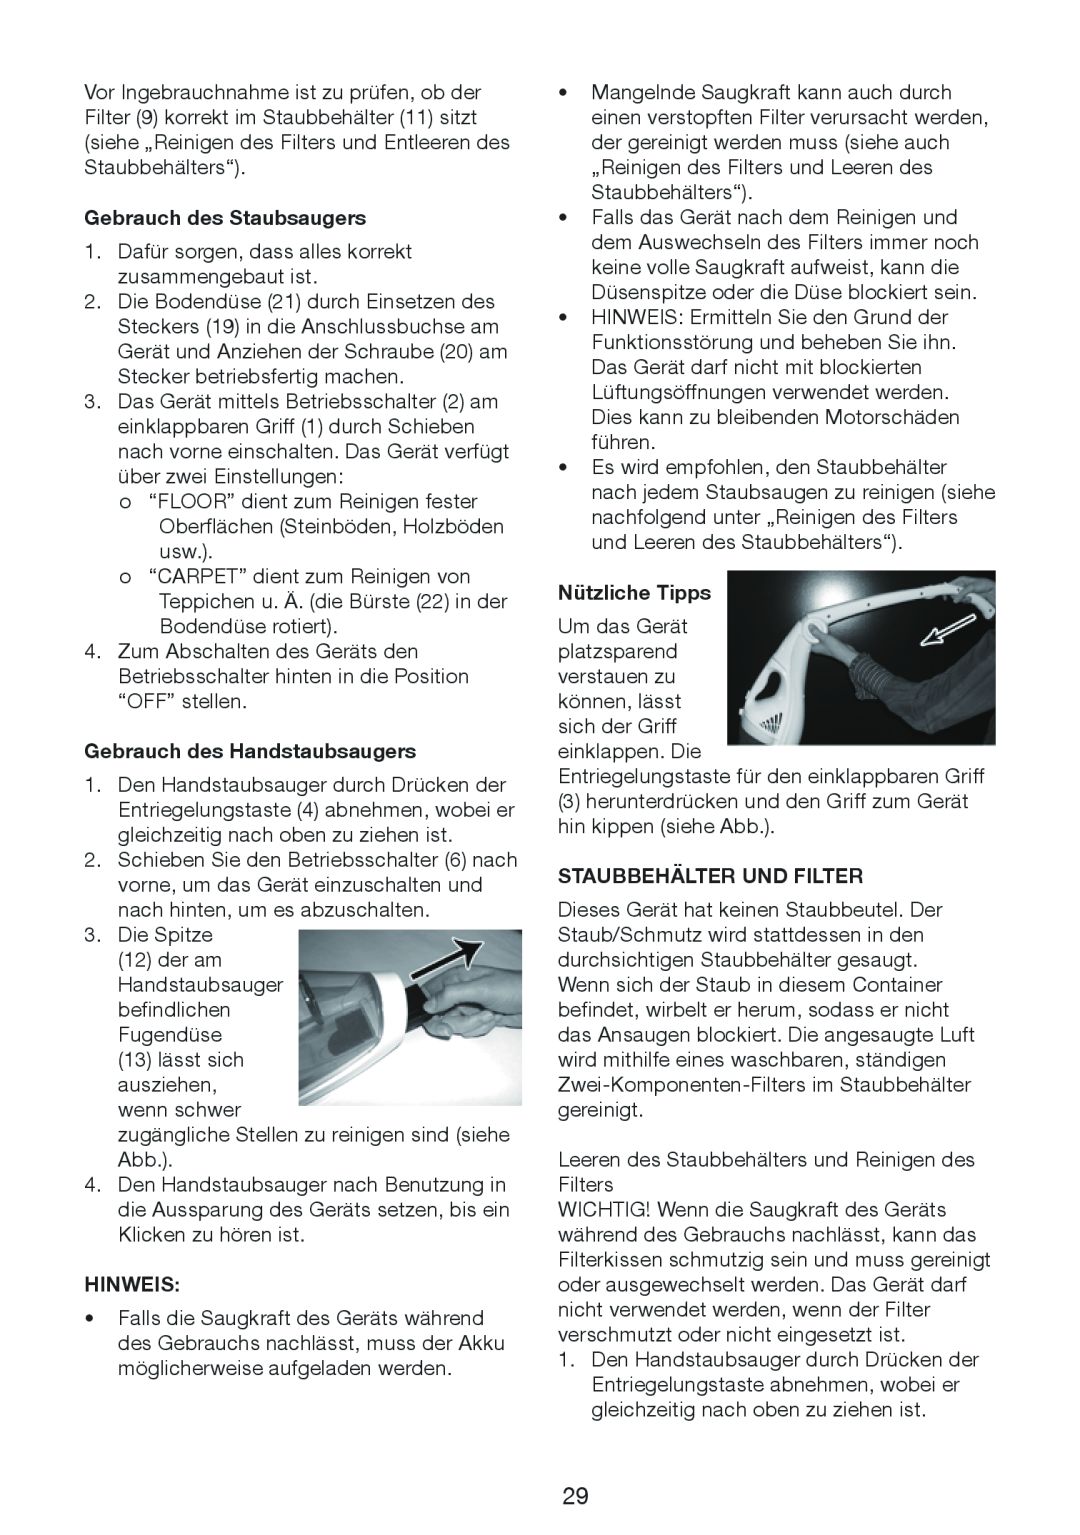 Melissa 640-132 manual Gebrauch des Staubsaugers, Gebrauch des Handstaubsaugers, Hinweis, Nützliche Tipps 